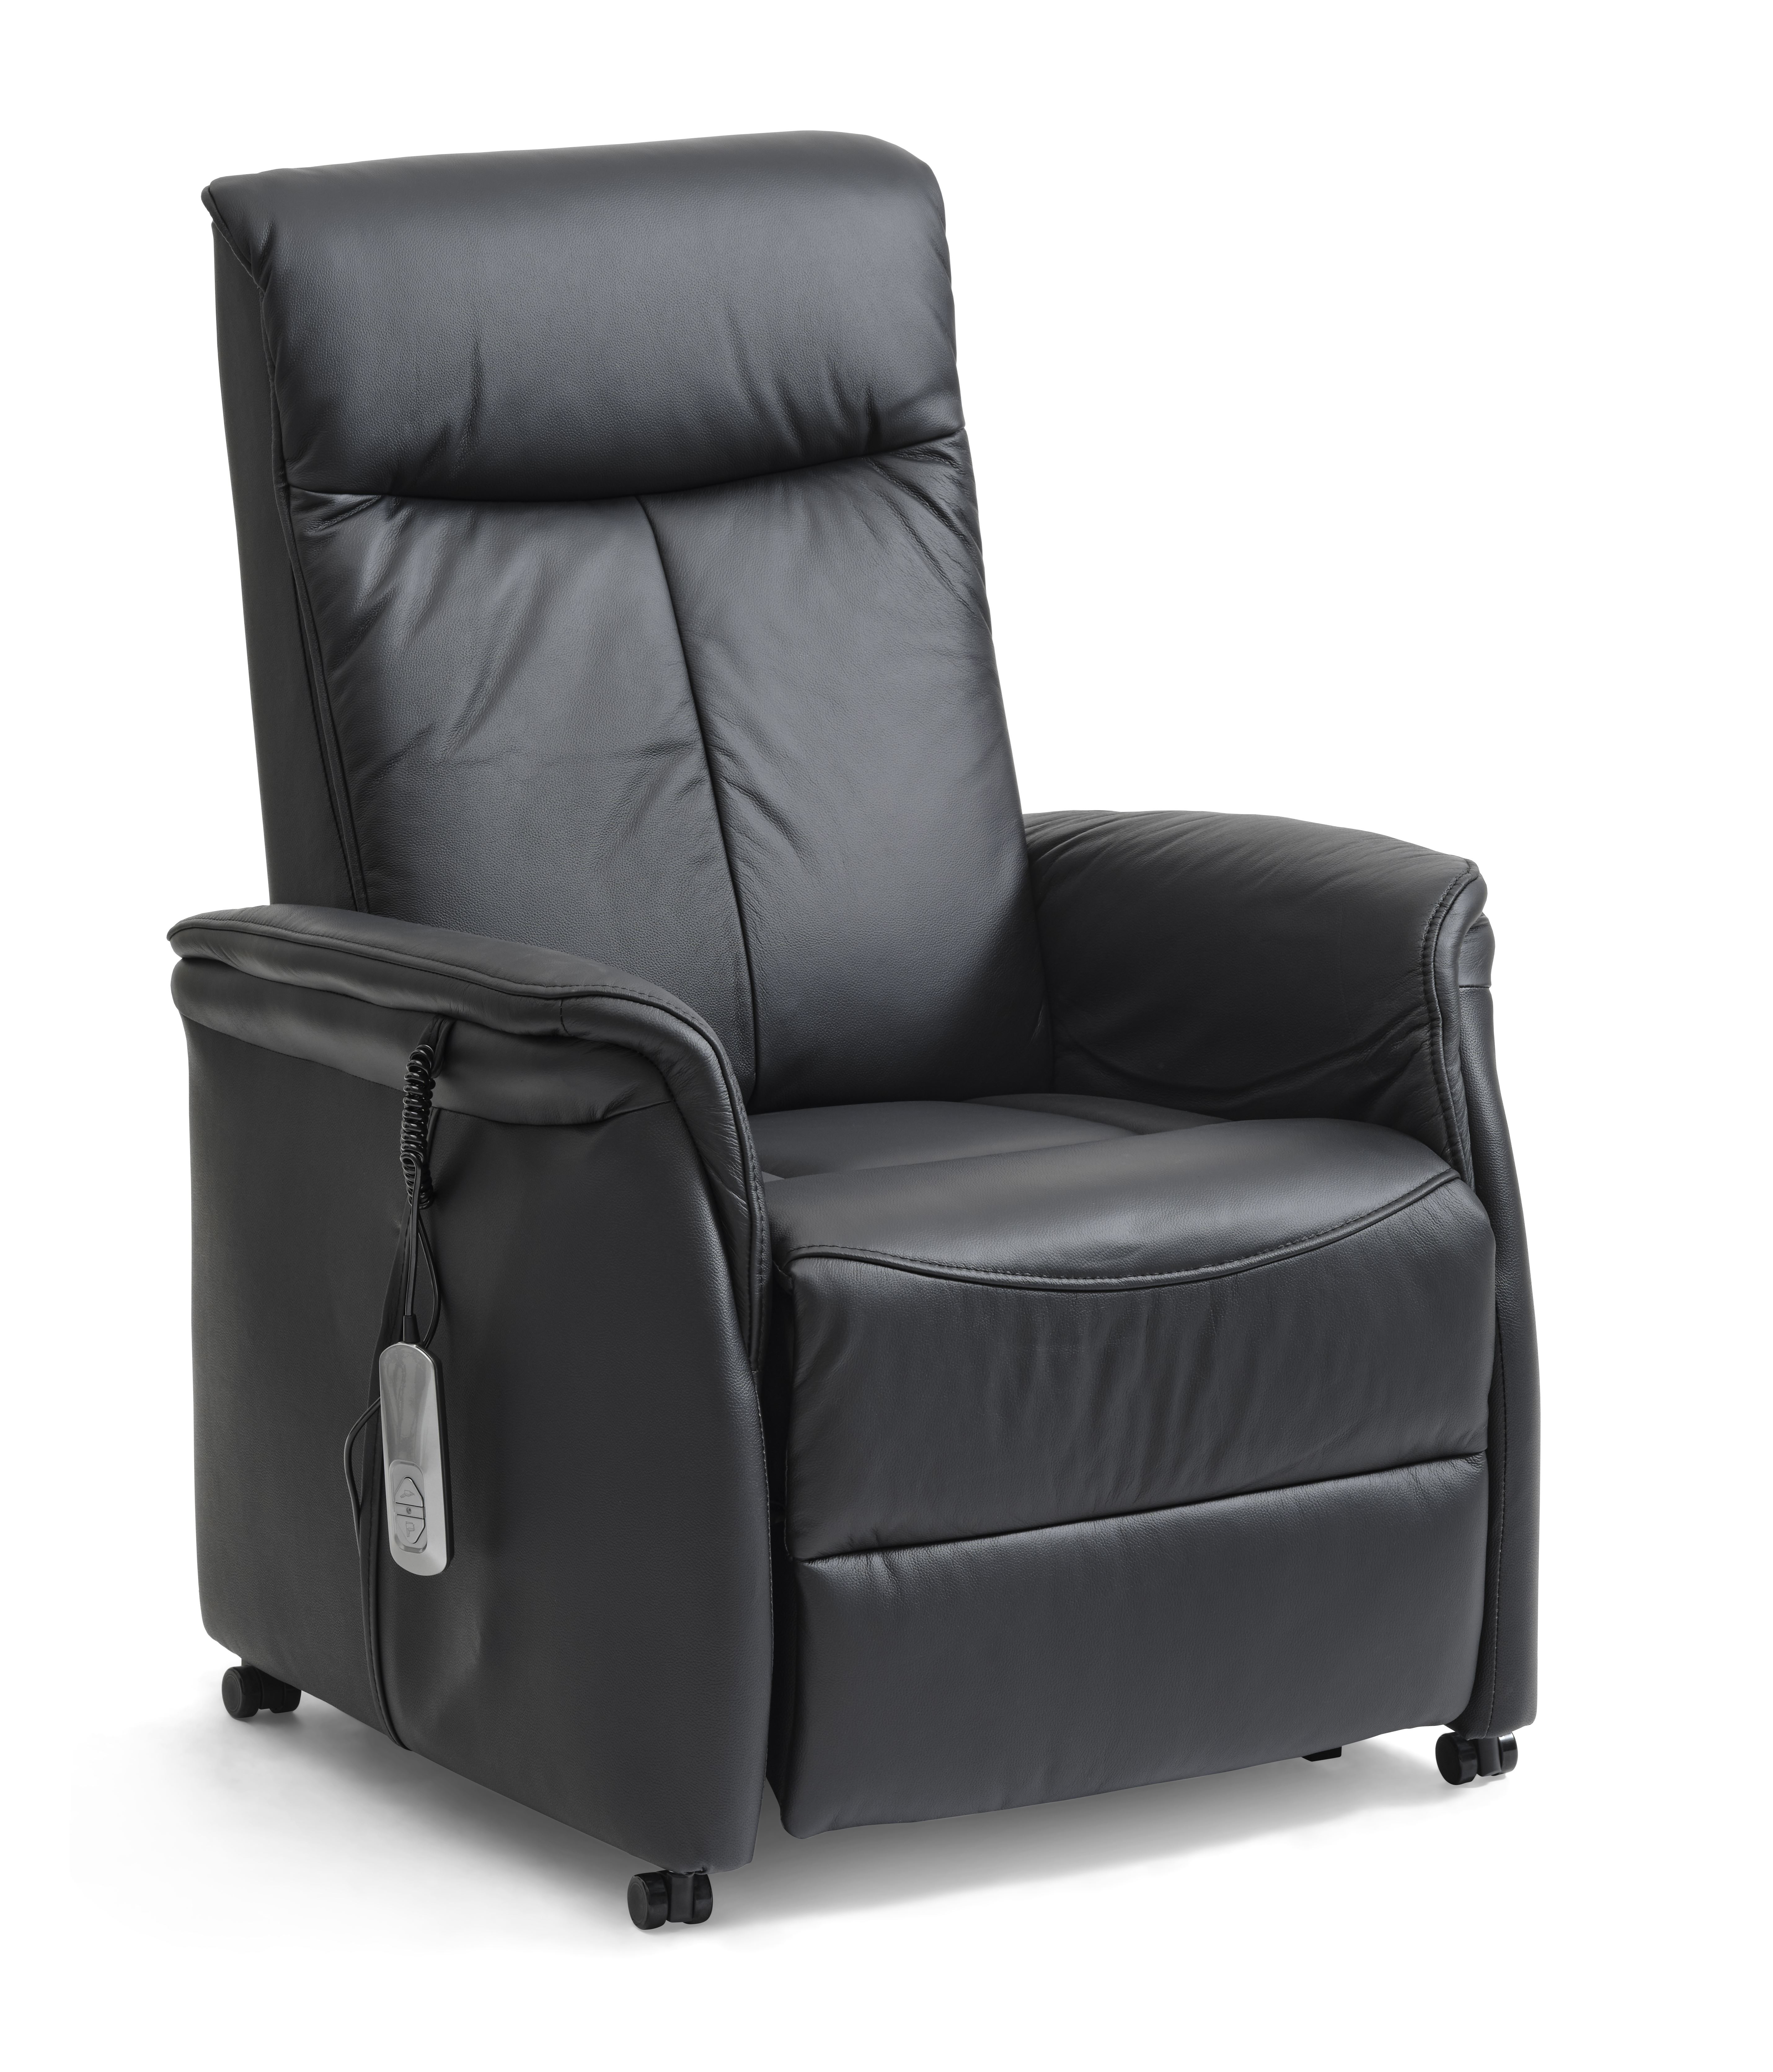 Billede af Victor recliner stol, m. 1 motor, sædeløft, vippefunktion, skammel, armlæn, hjul - sort læder/PVC